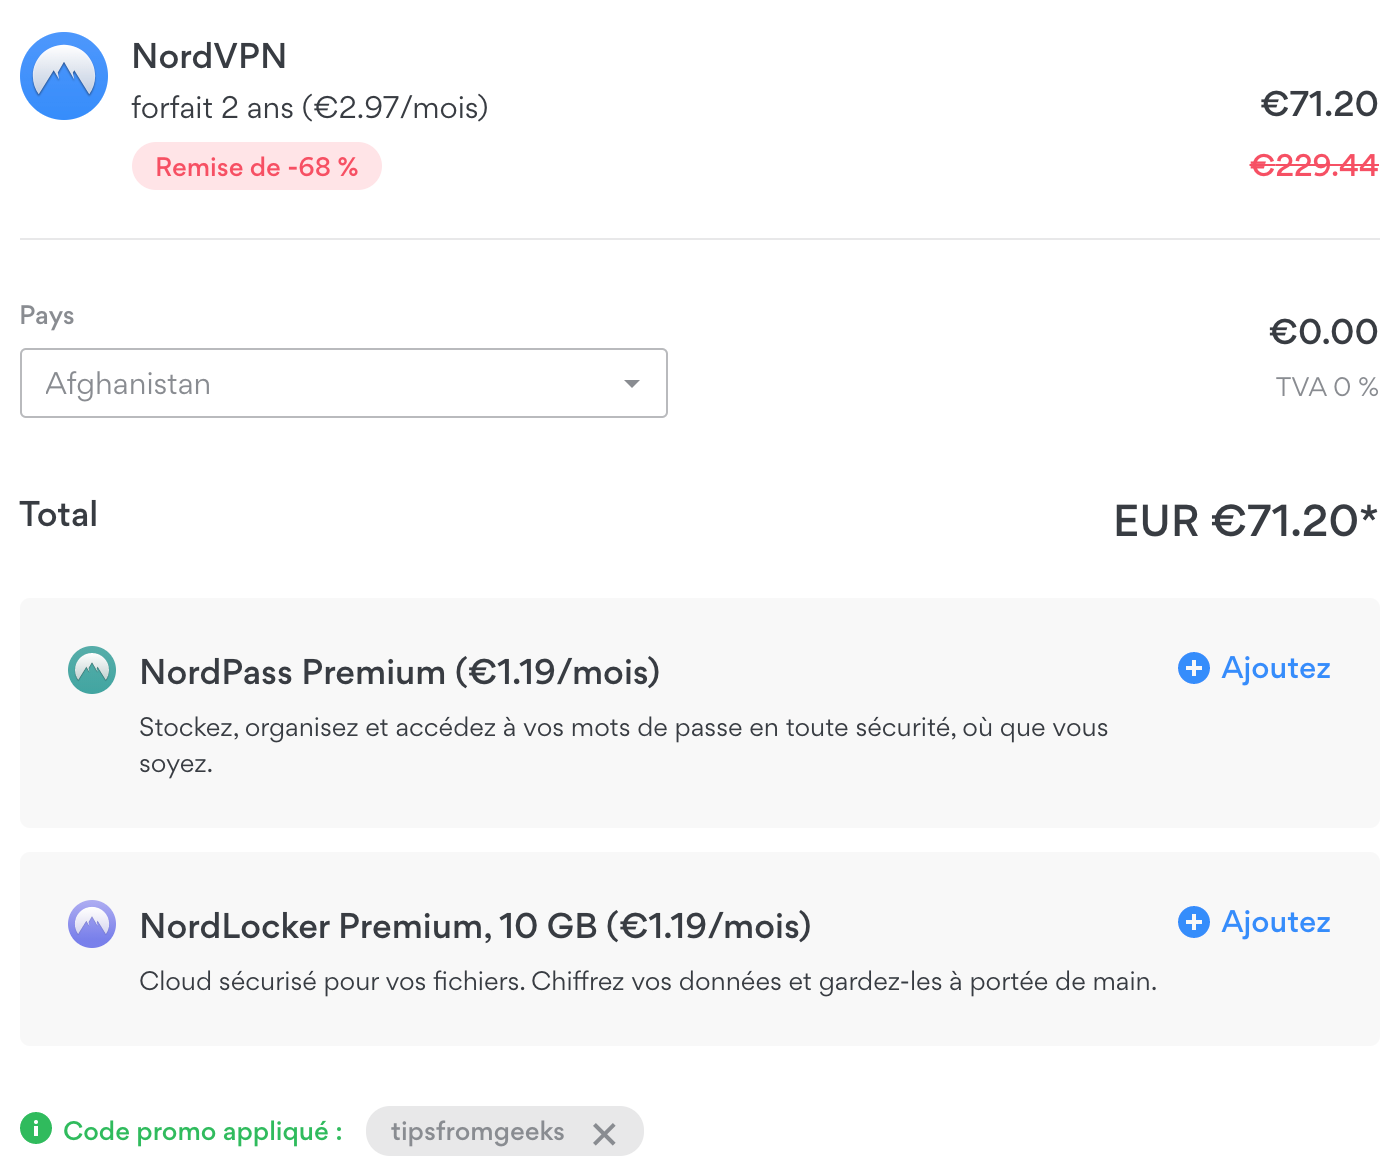 Offre NordVPN à -68% avec le code promo de tipsfromgeeks